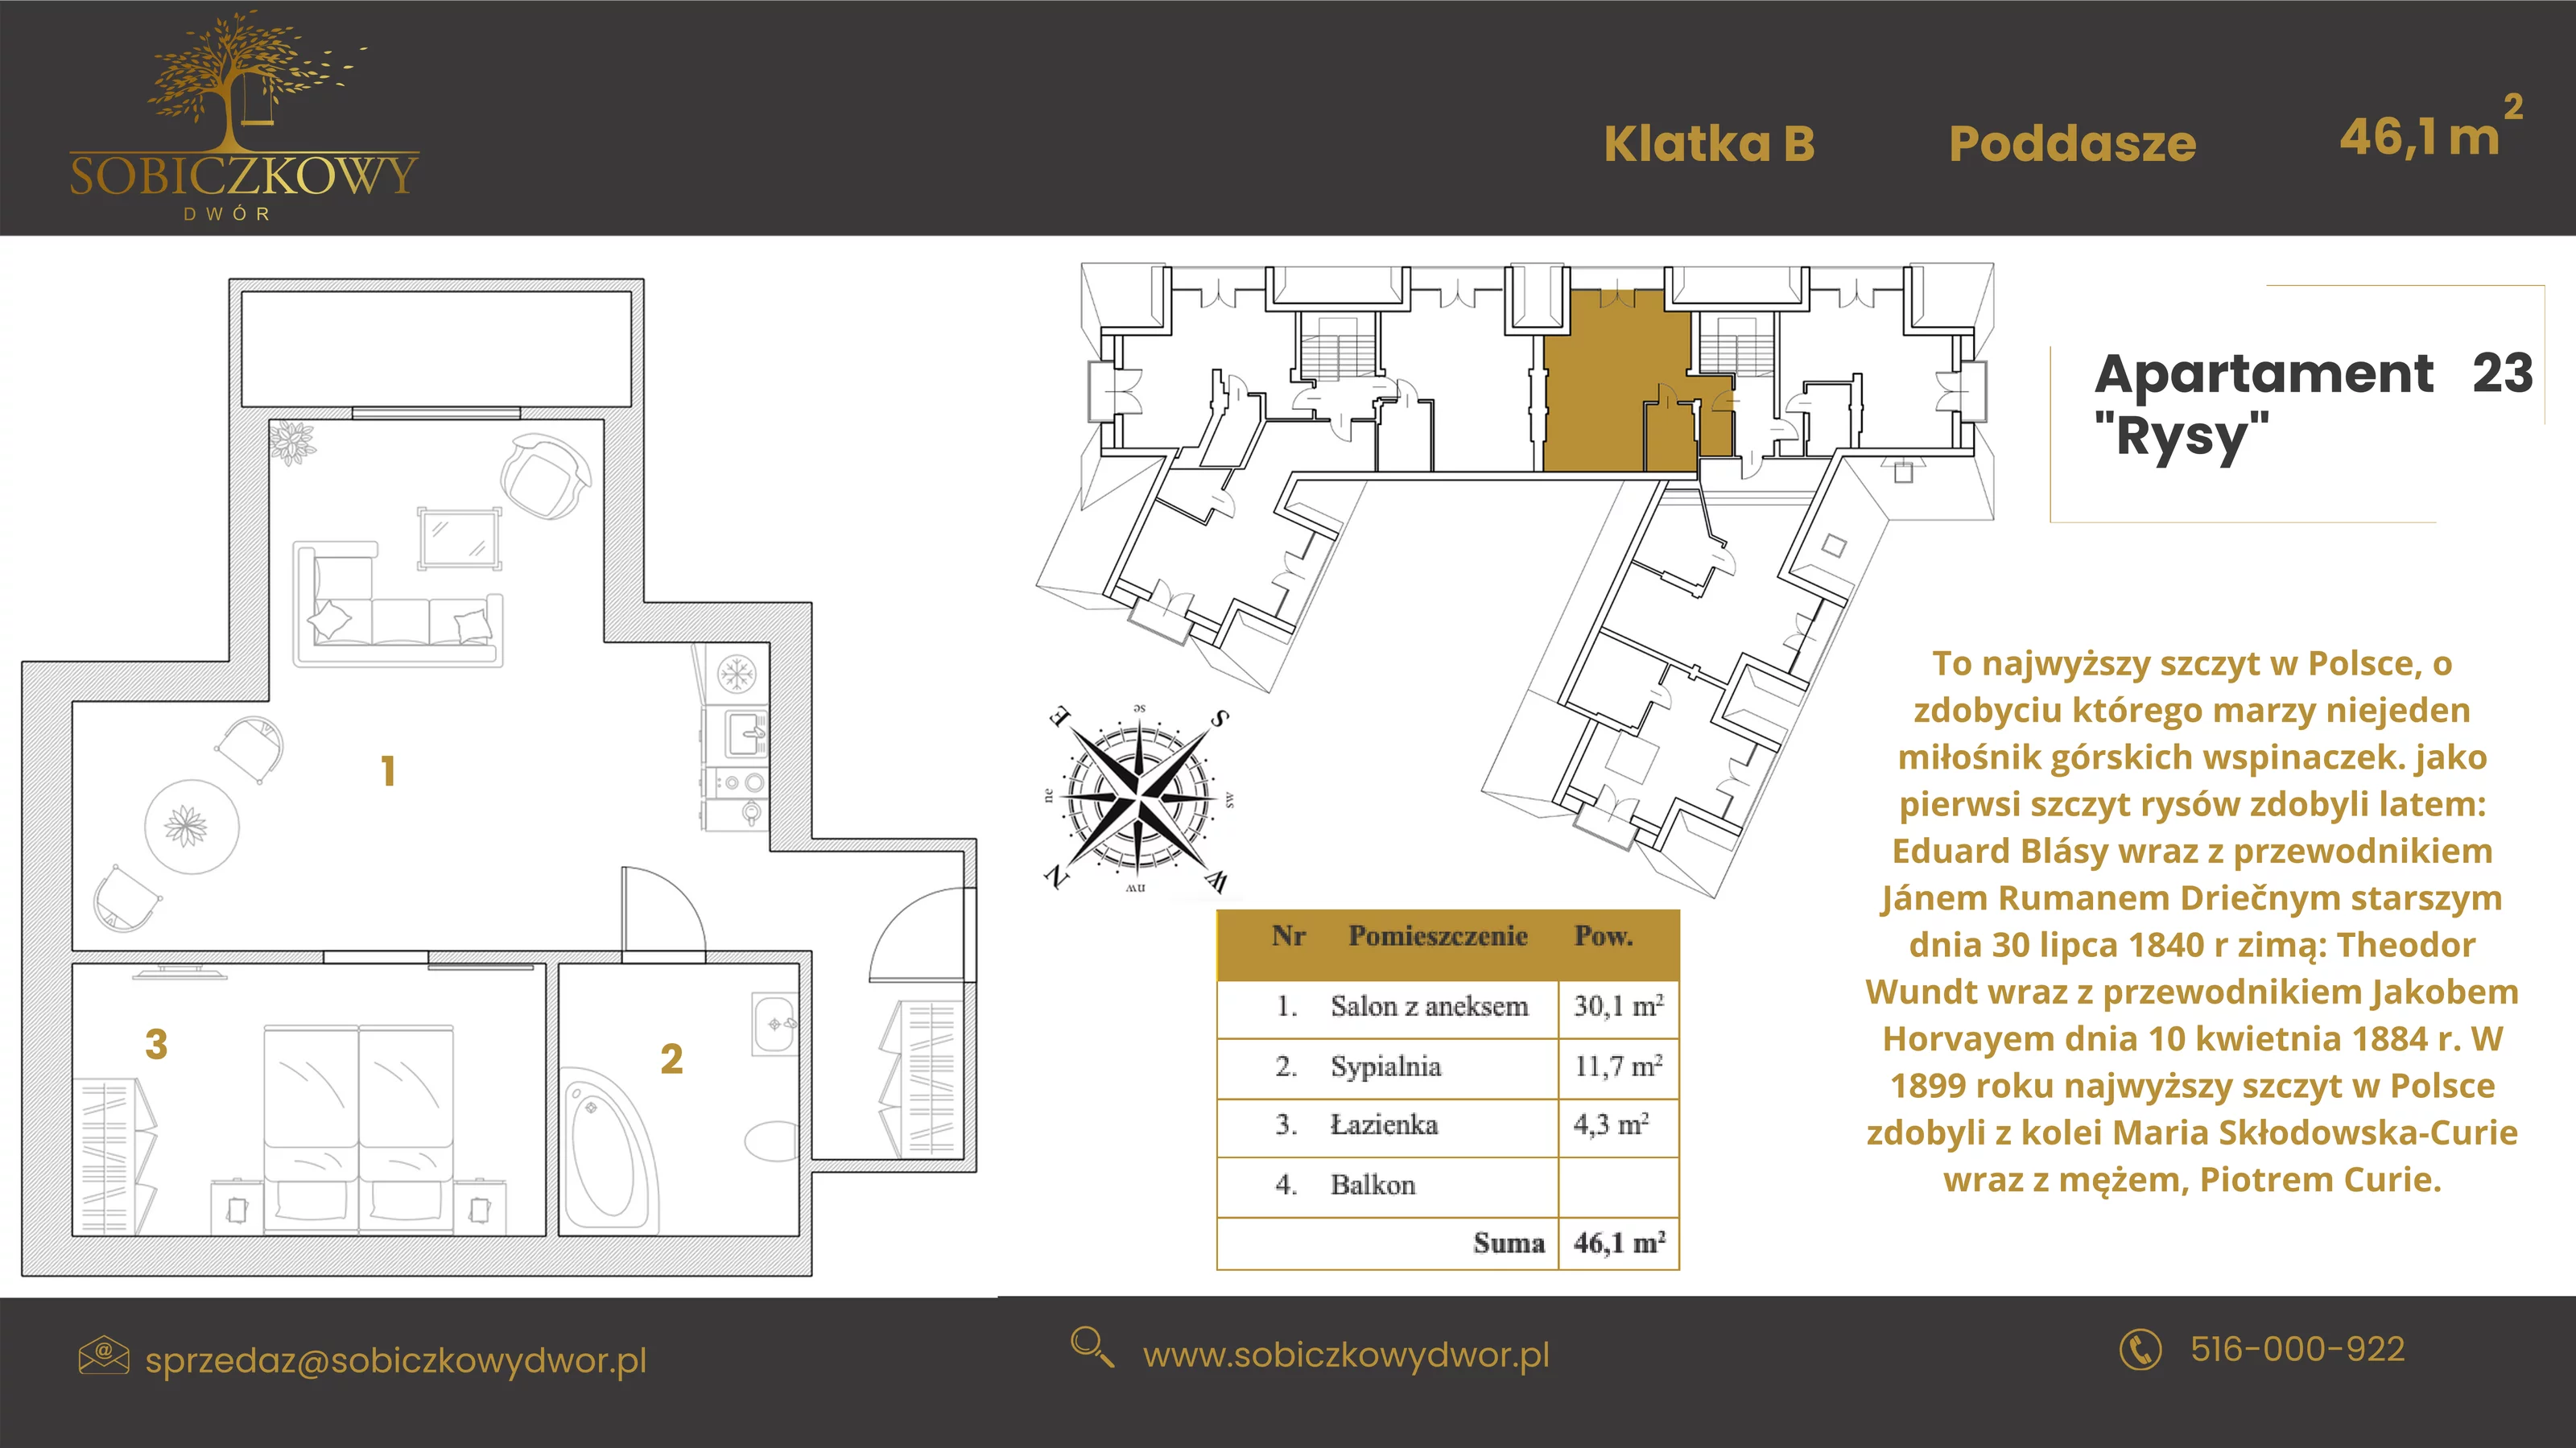 Apartament 46,10 m², piętro 2, oferta nr 23 "Rysy", Sobiczkowy Dwór, Kościelisko, ul. Sobiczkowa Bór 1